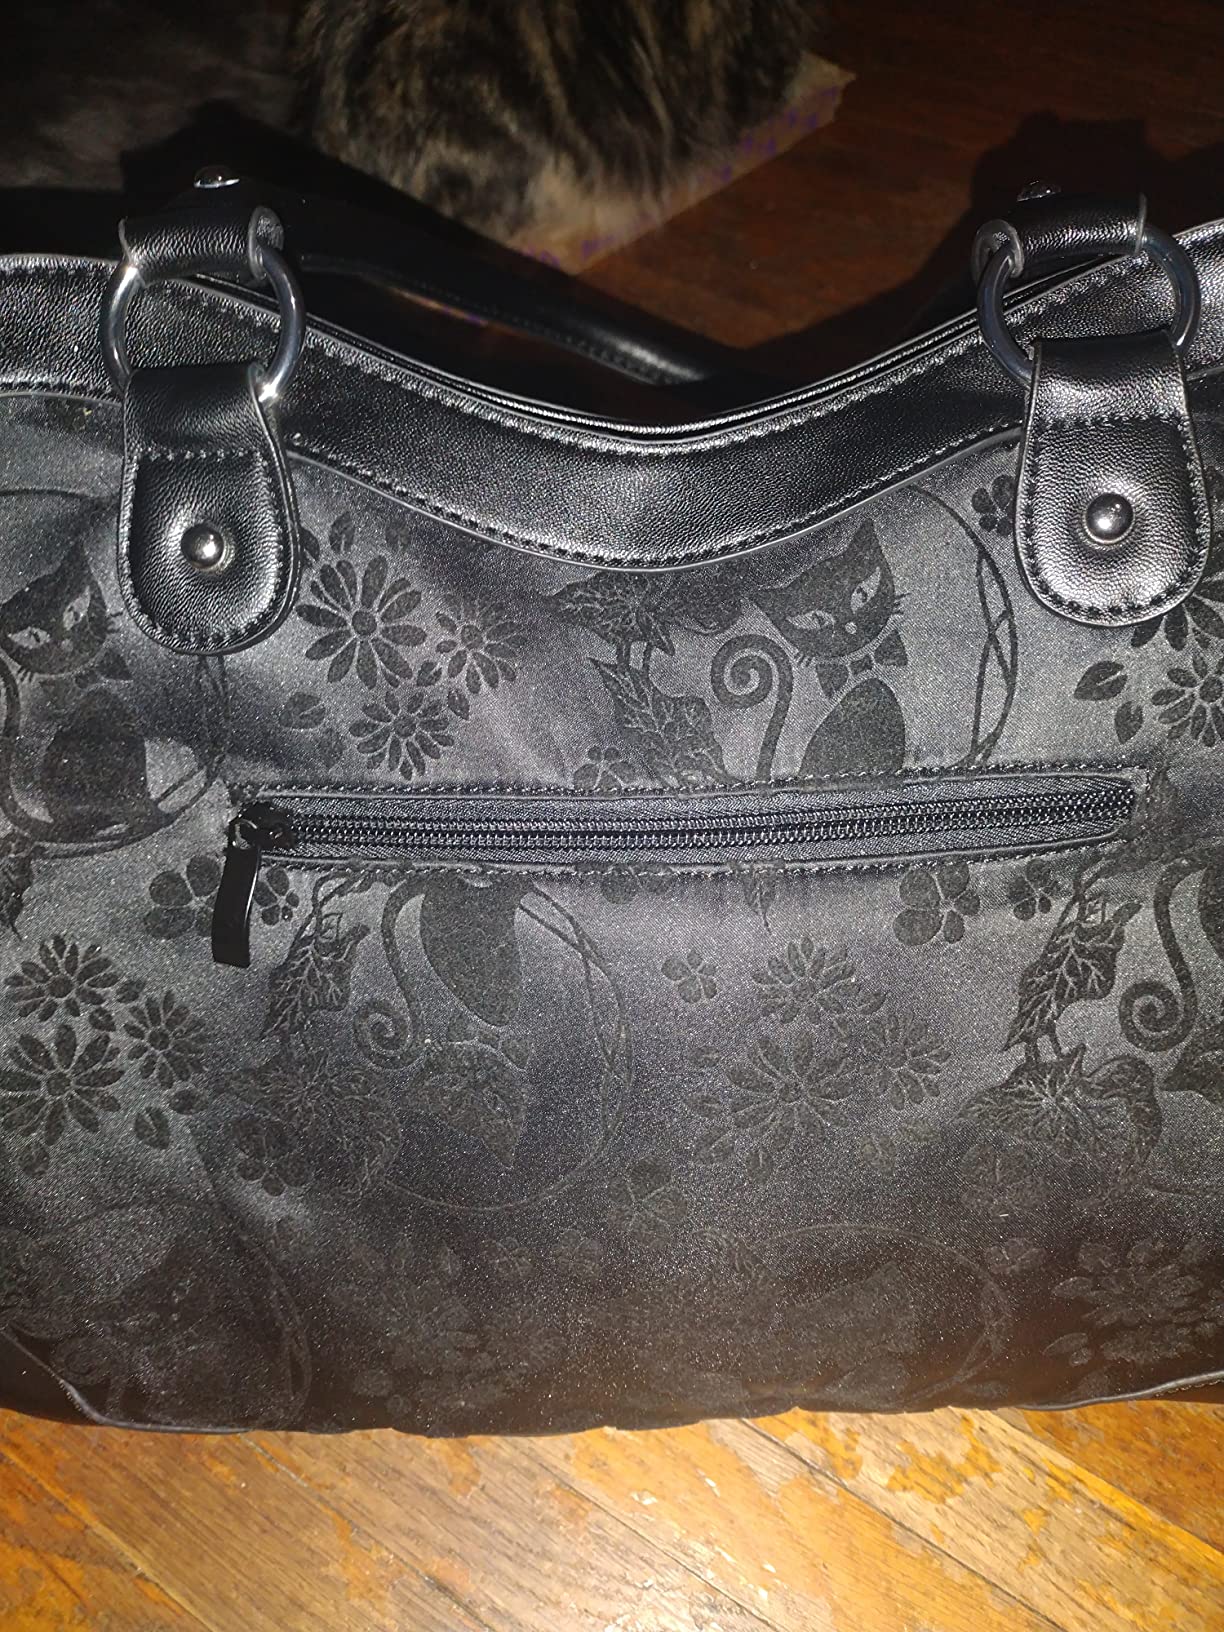 Lost Queen Dark Victorian Purse | Gothic Cat Print Shoulder Bag |  Goth Handbag (Call of the Phoenix Black)